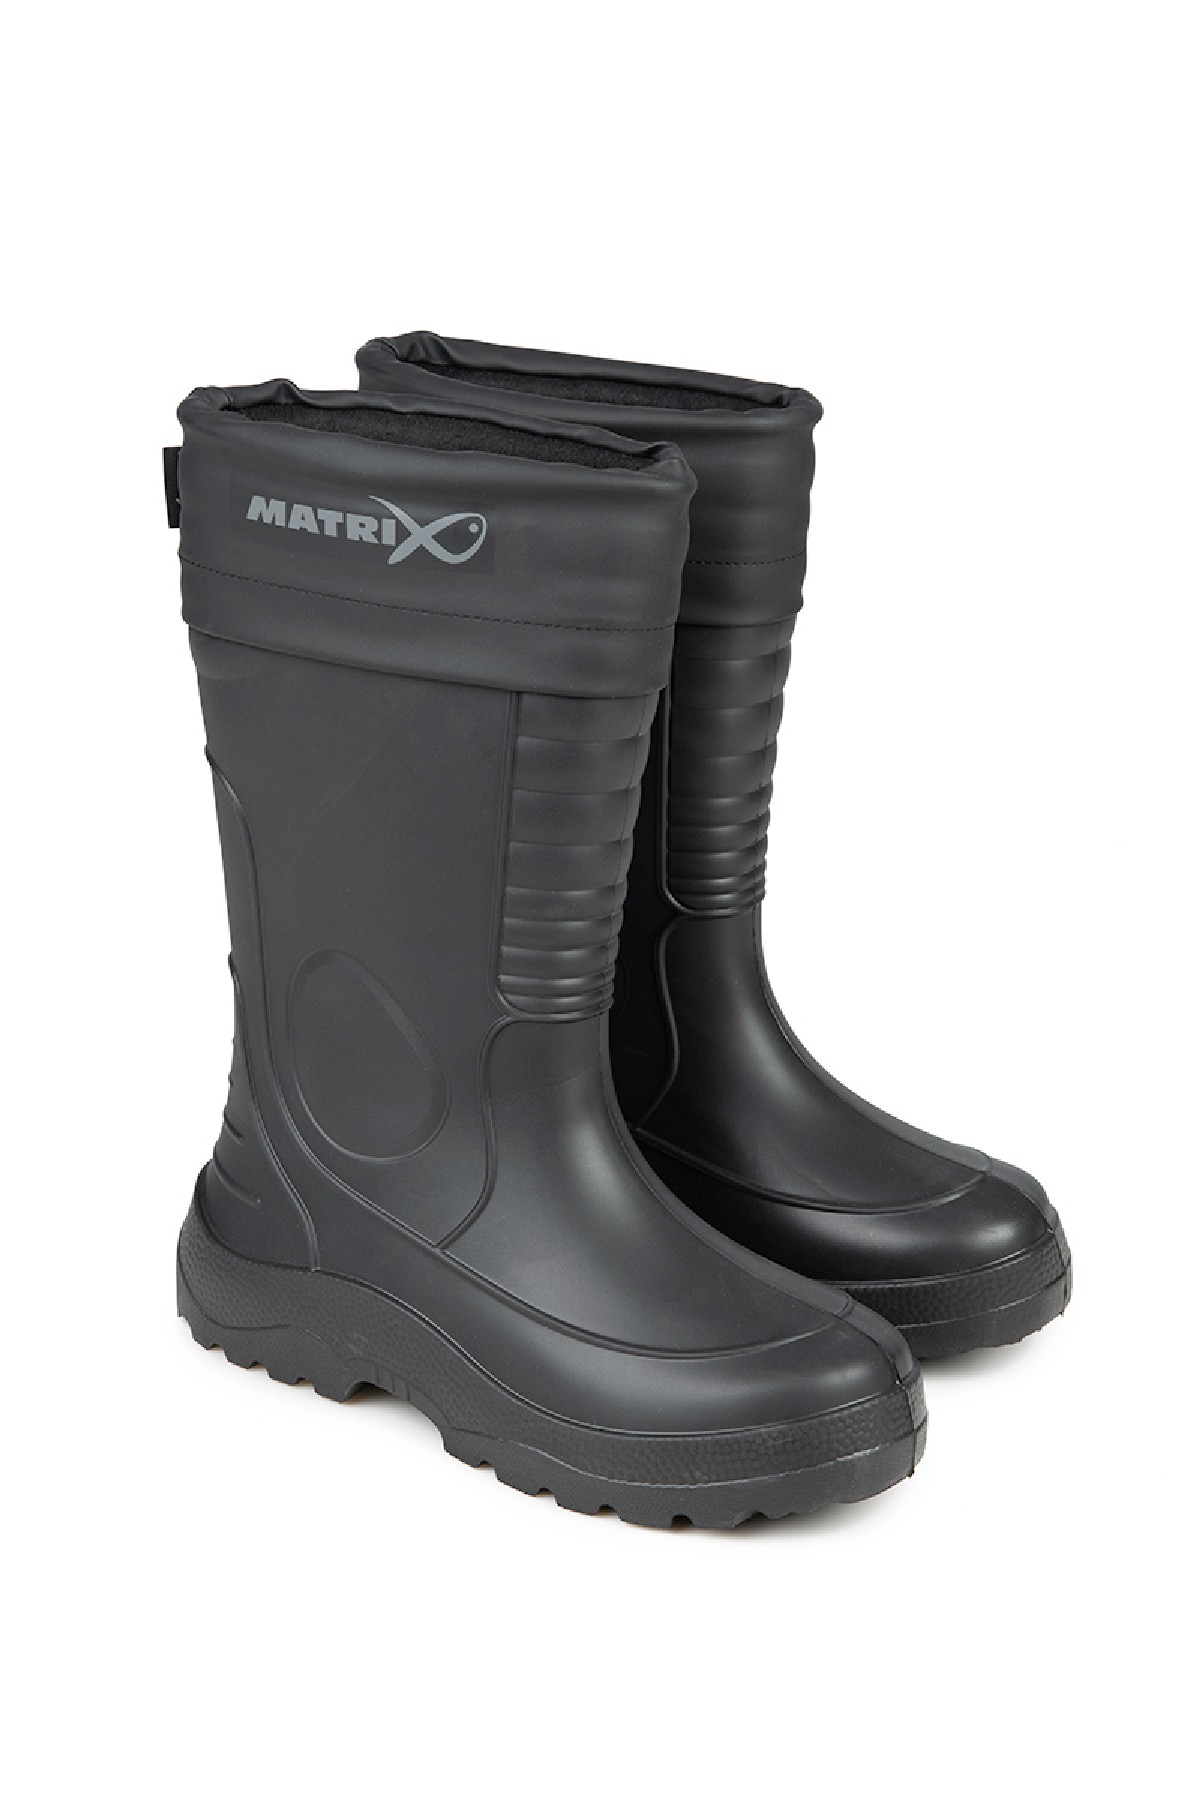 Matrix Thermal Eva Boots 43